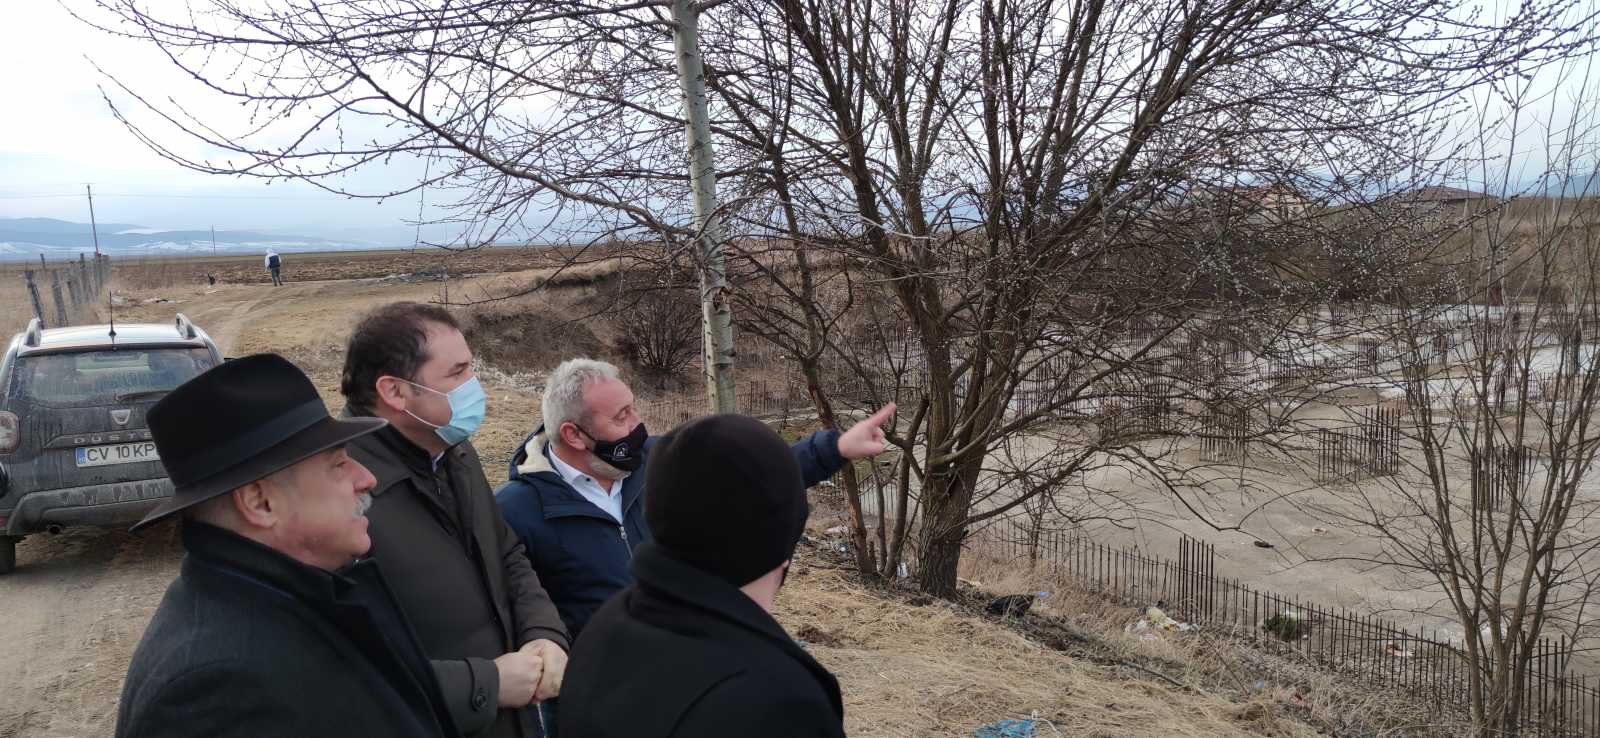 Cseke Attila vidékfejlesztési miniszter 2021. február 12-én látogatott Kézdivásárhelyre és tett ígéretet az uszoda építésének finanszírozására | A szerző felvételei